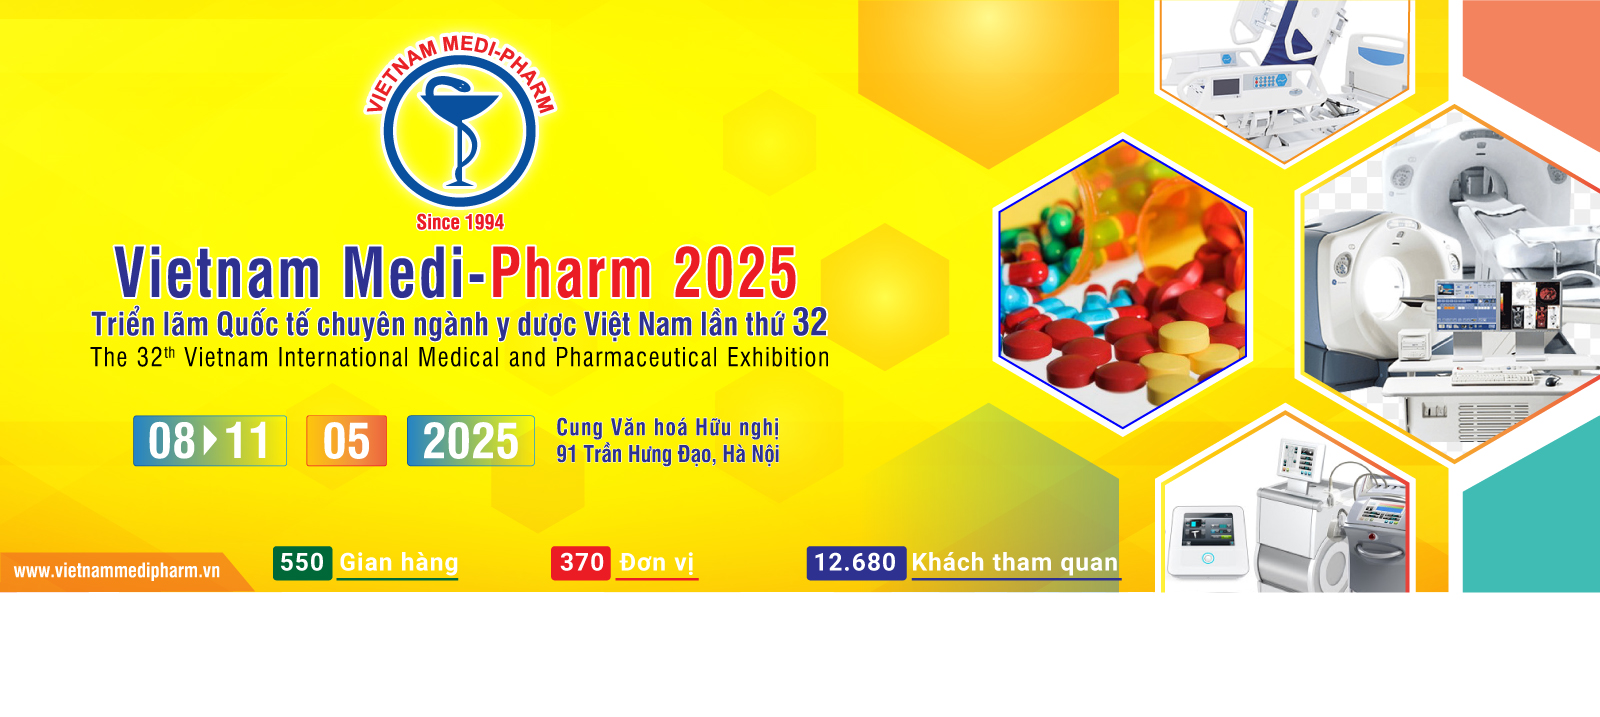 VIETNAM MEDI-PHARM 2025